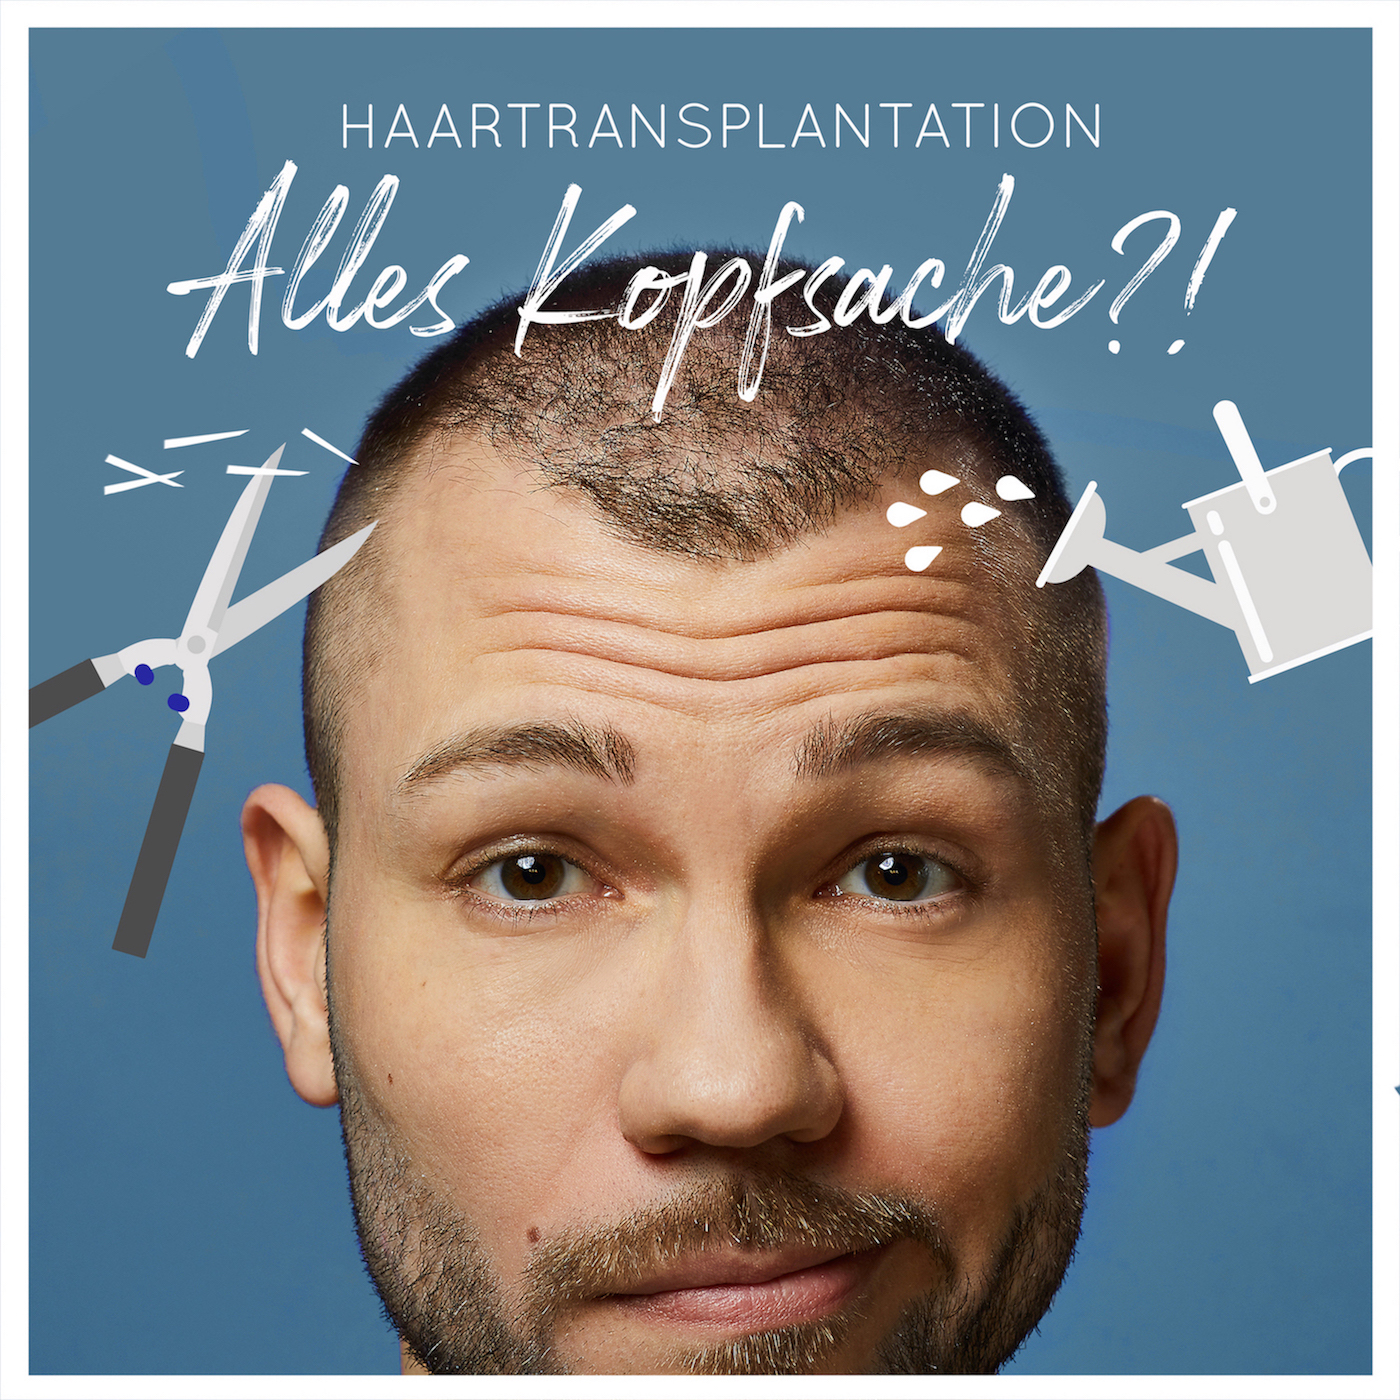 Haartransplantation - Alles Kopfsache?!